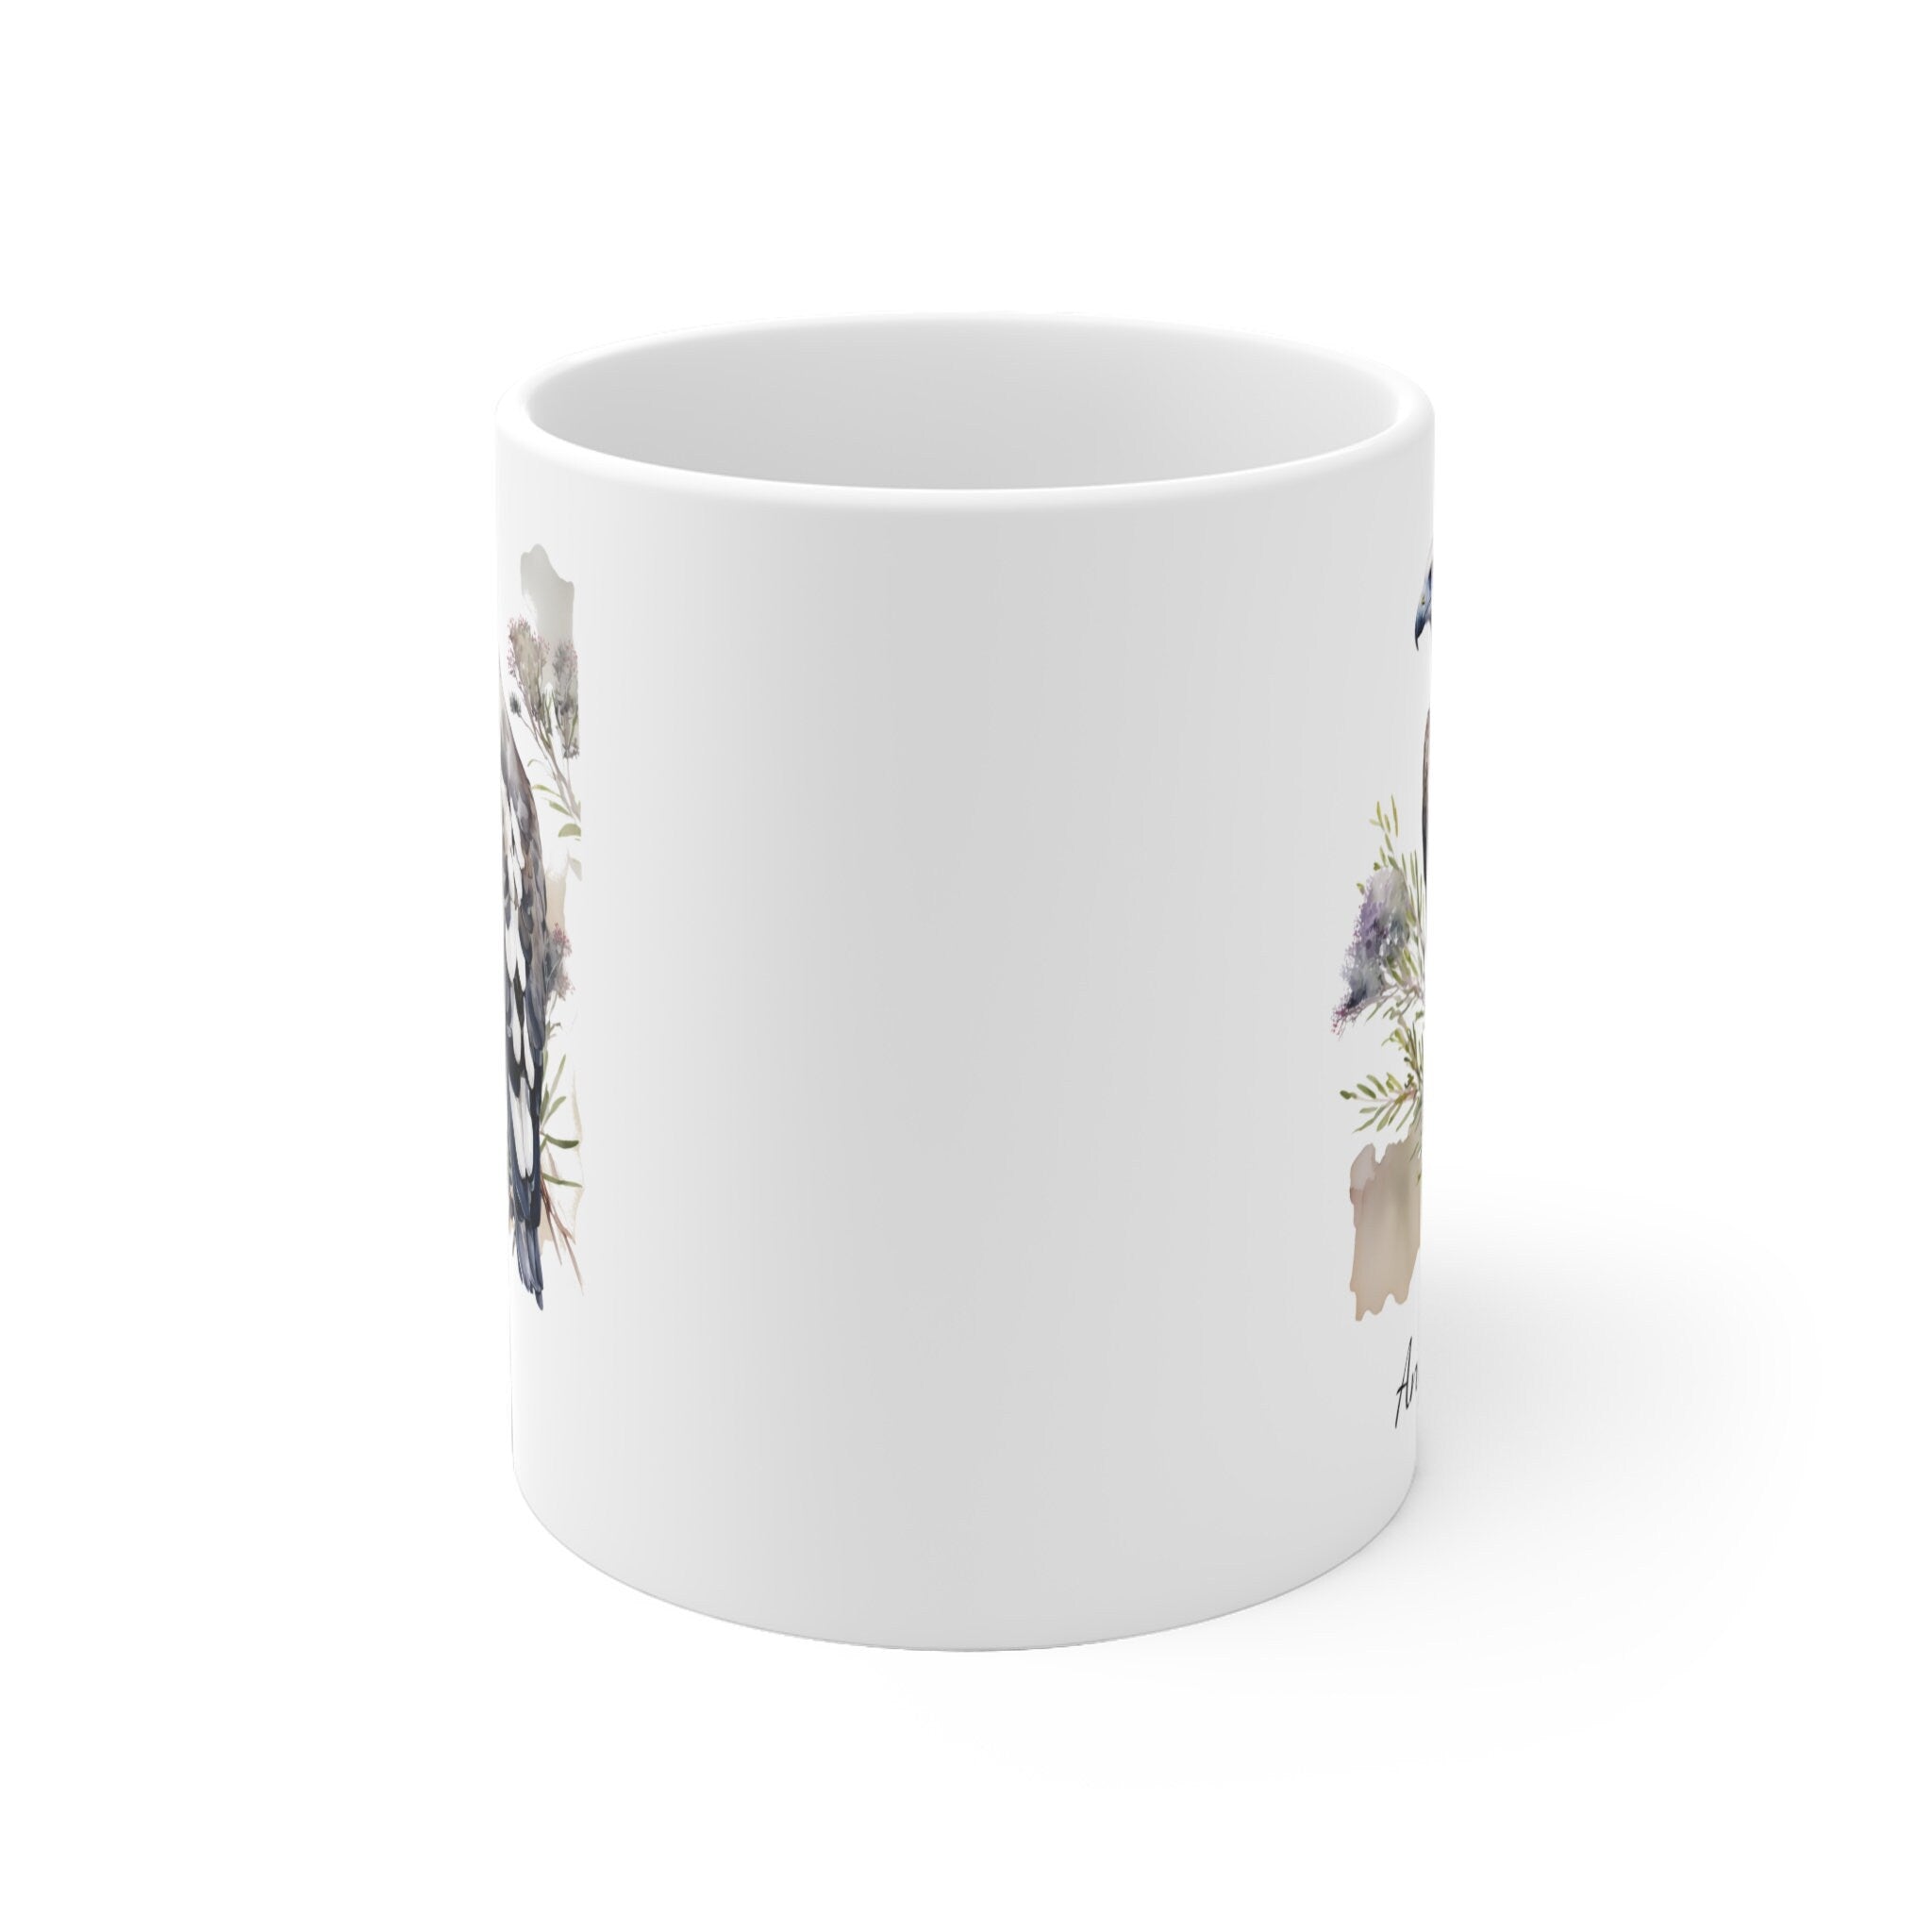 Personalized Sea Eagle Coffee Mug